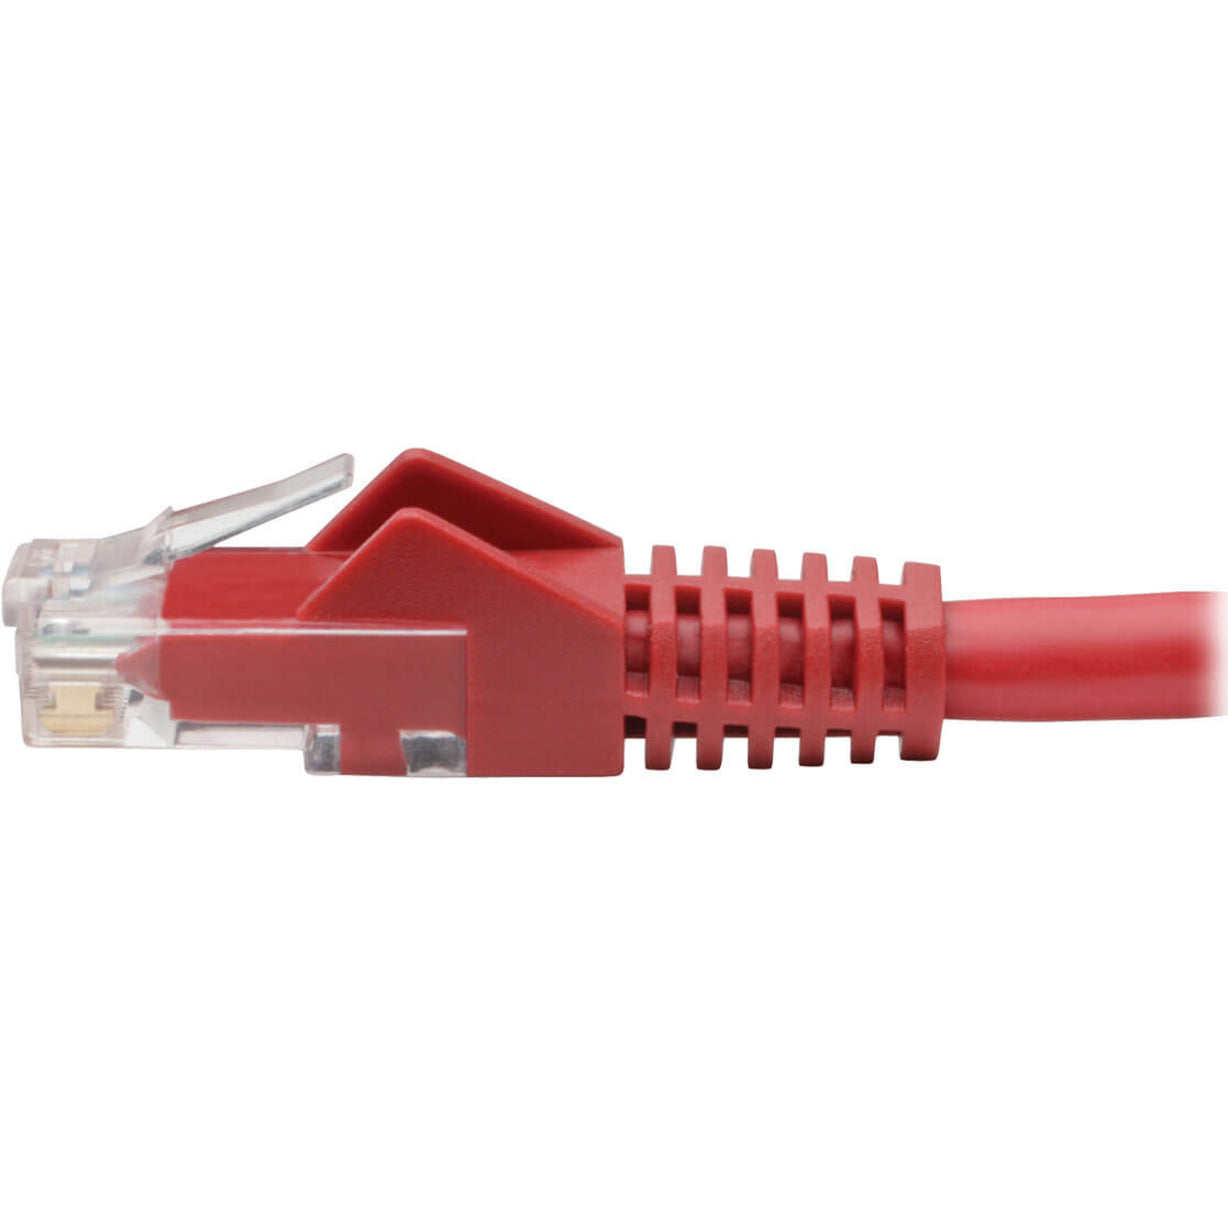 تريب لايت N201-004-RD كابل الشبكة باتش Cat.6 UTP 4 قدم غيغابت سهل الإزالة أحمر